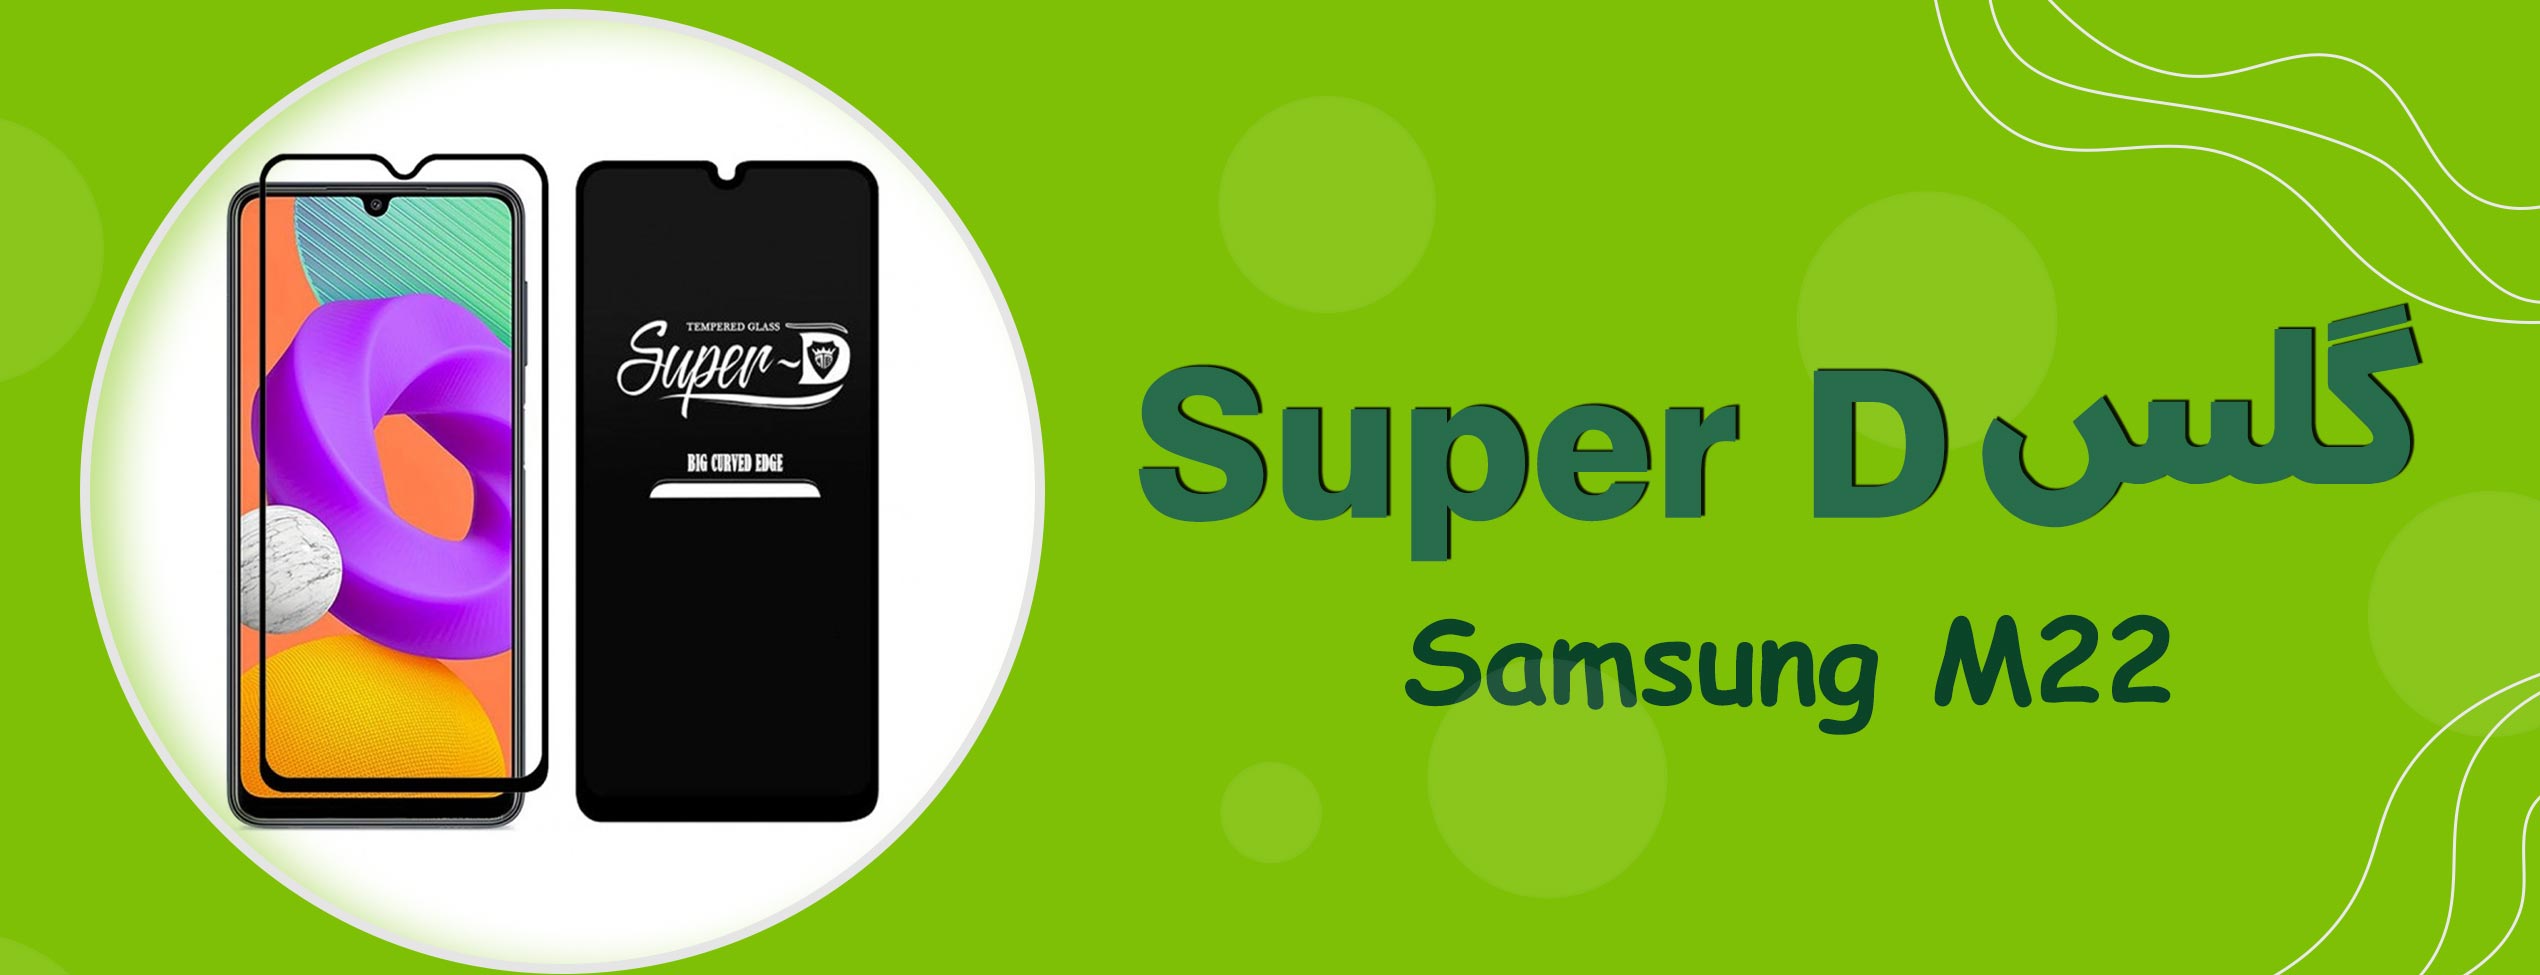 گلس Super D گوشی سامسونگ Samsung M22